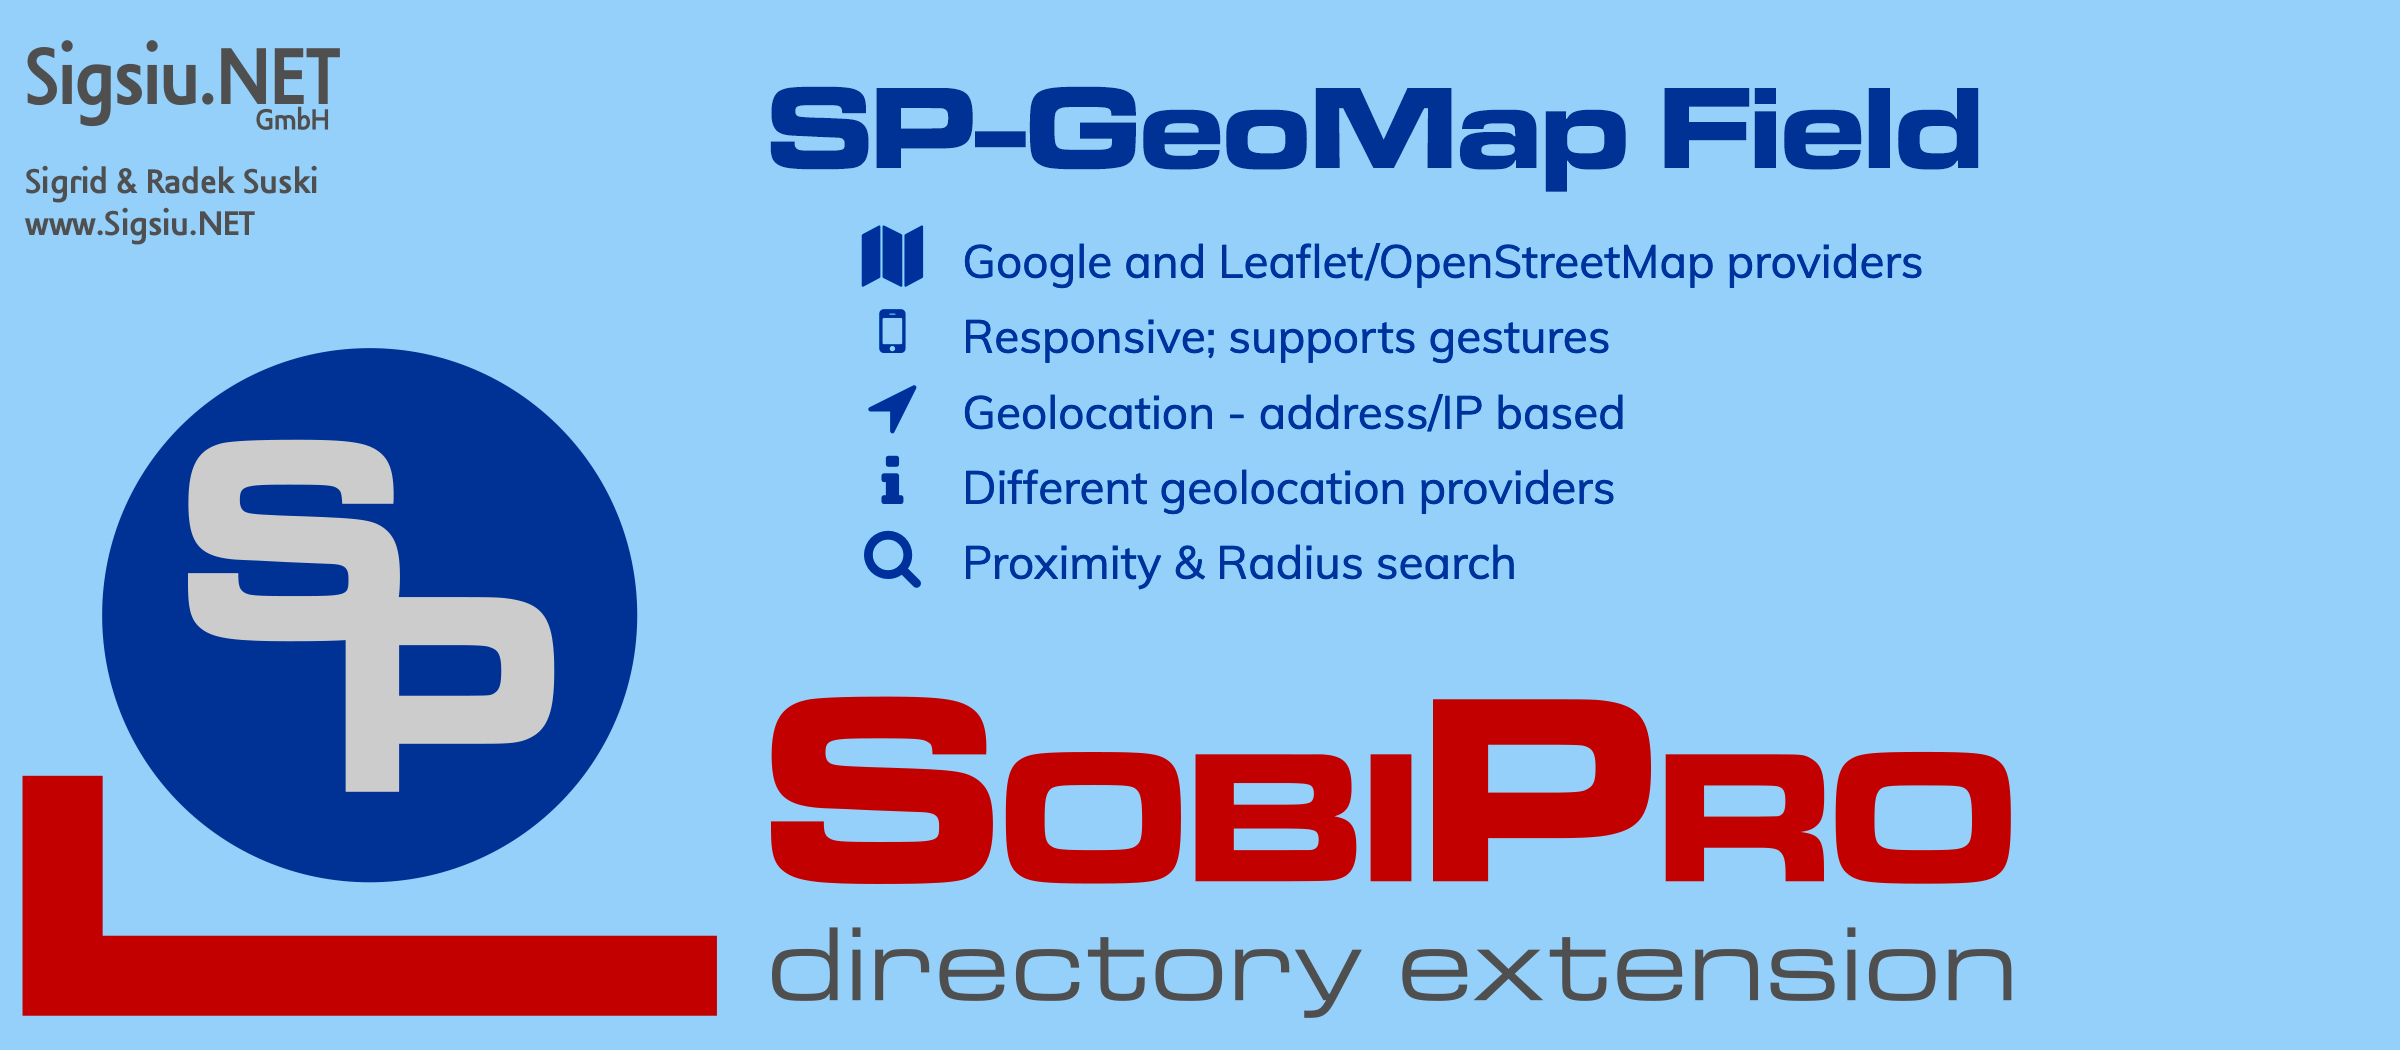 The SP-GeoMap Field